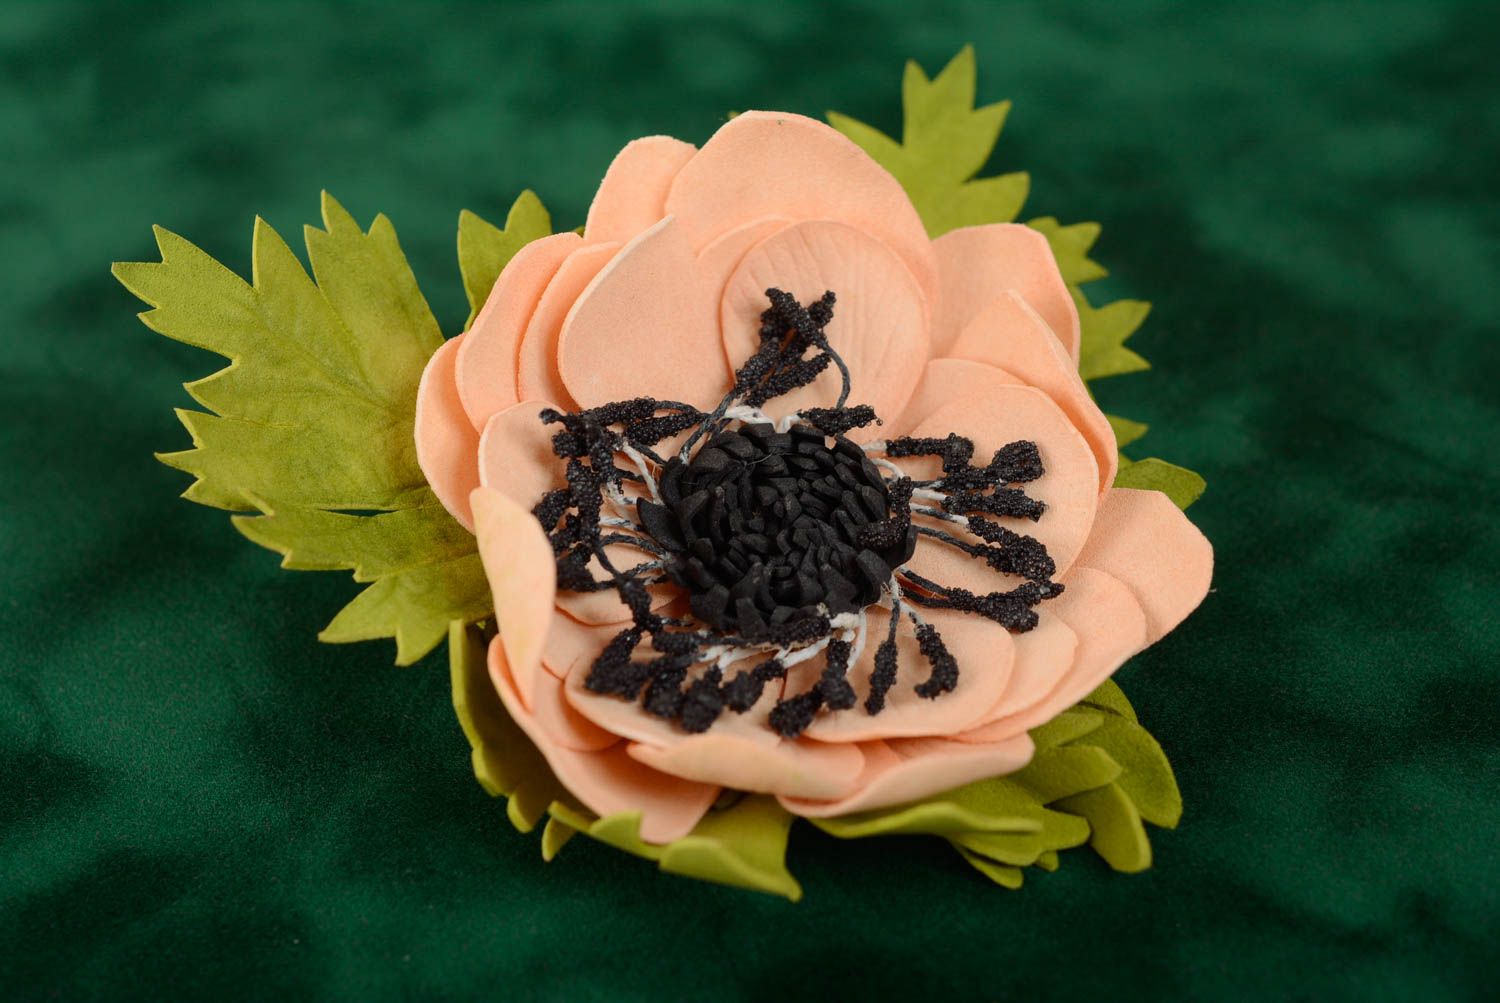 Брошь из фоамирана цветок авторская розовая с черным на булавке ручная работа фото 1